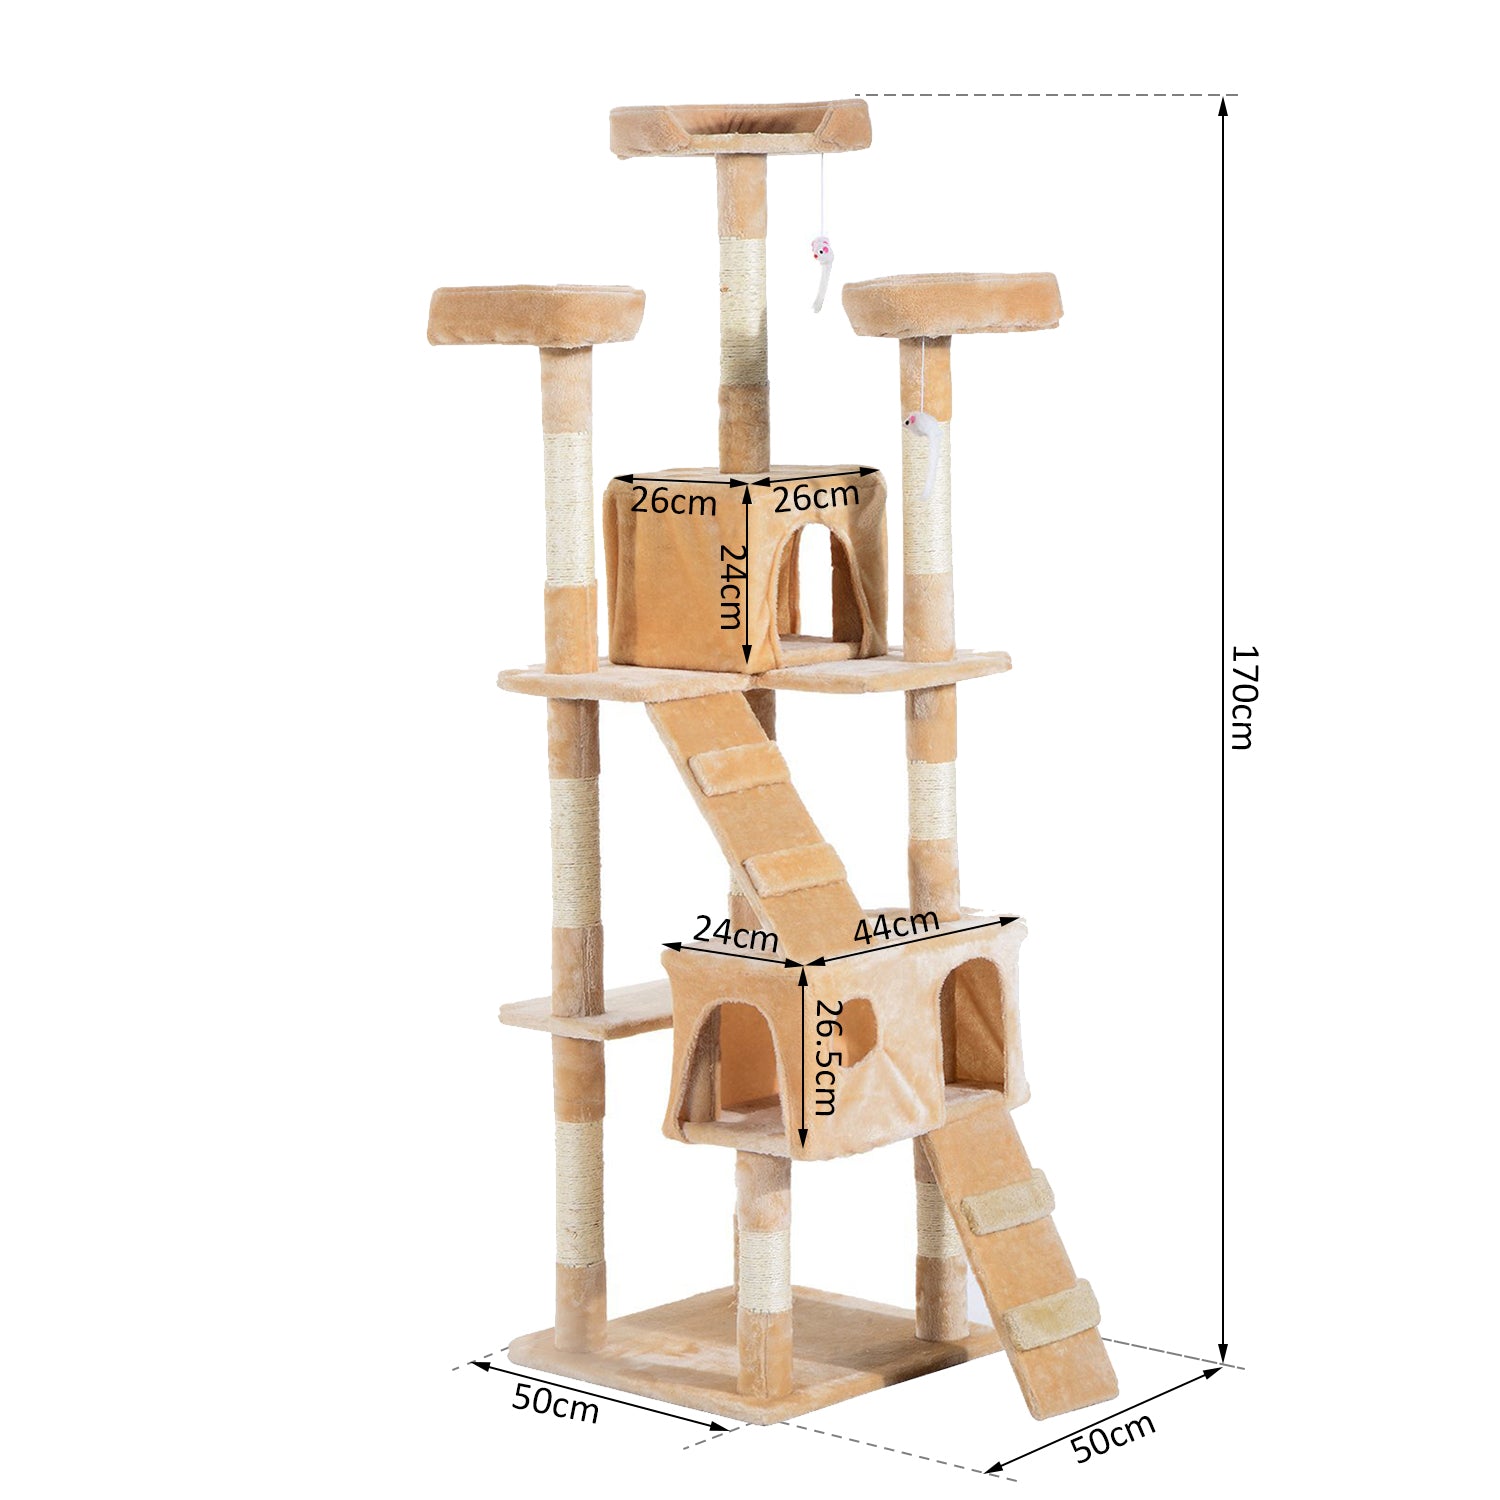 170cm Cat Tree Kitten Kitty Scratcher Post Climbing Tower Activity Center House-Cream